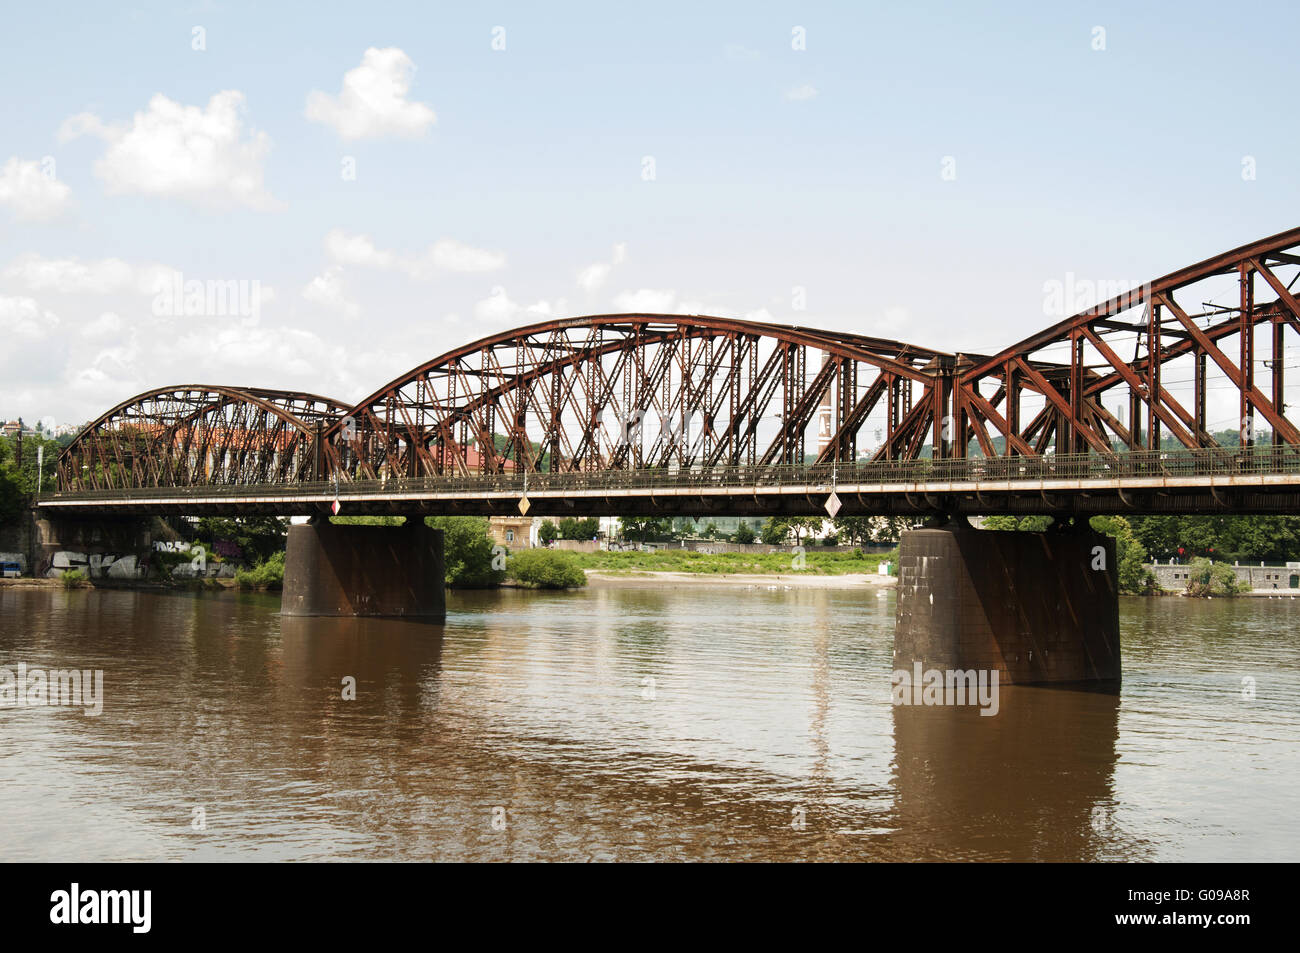 Puente de ferrocarril en Vyton, Praga - República Checa Foto de stock